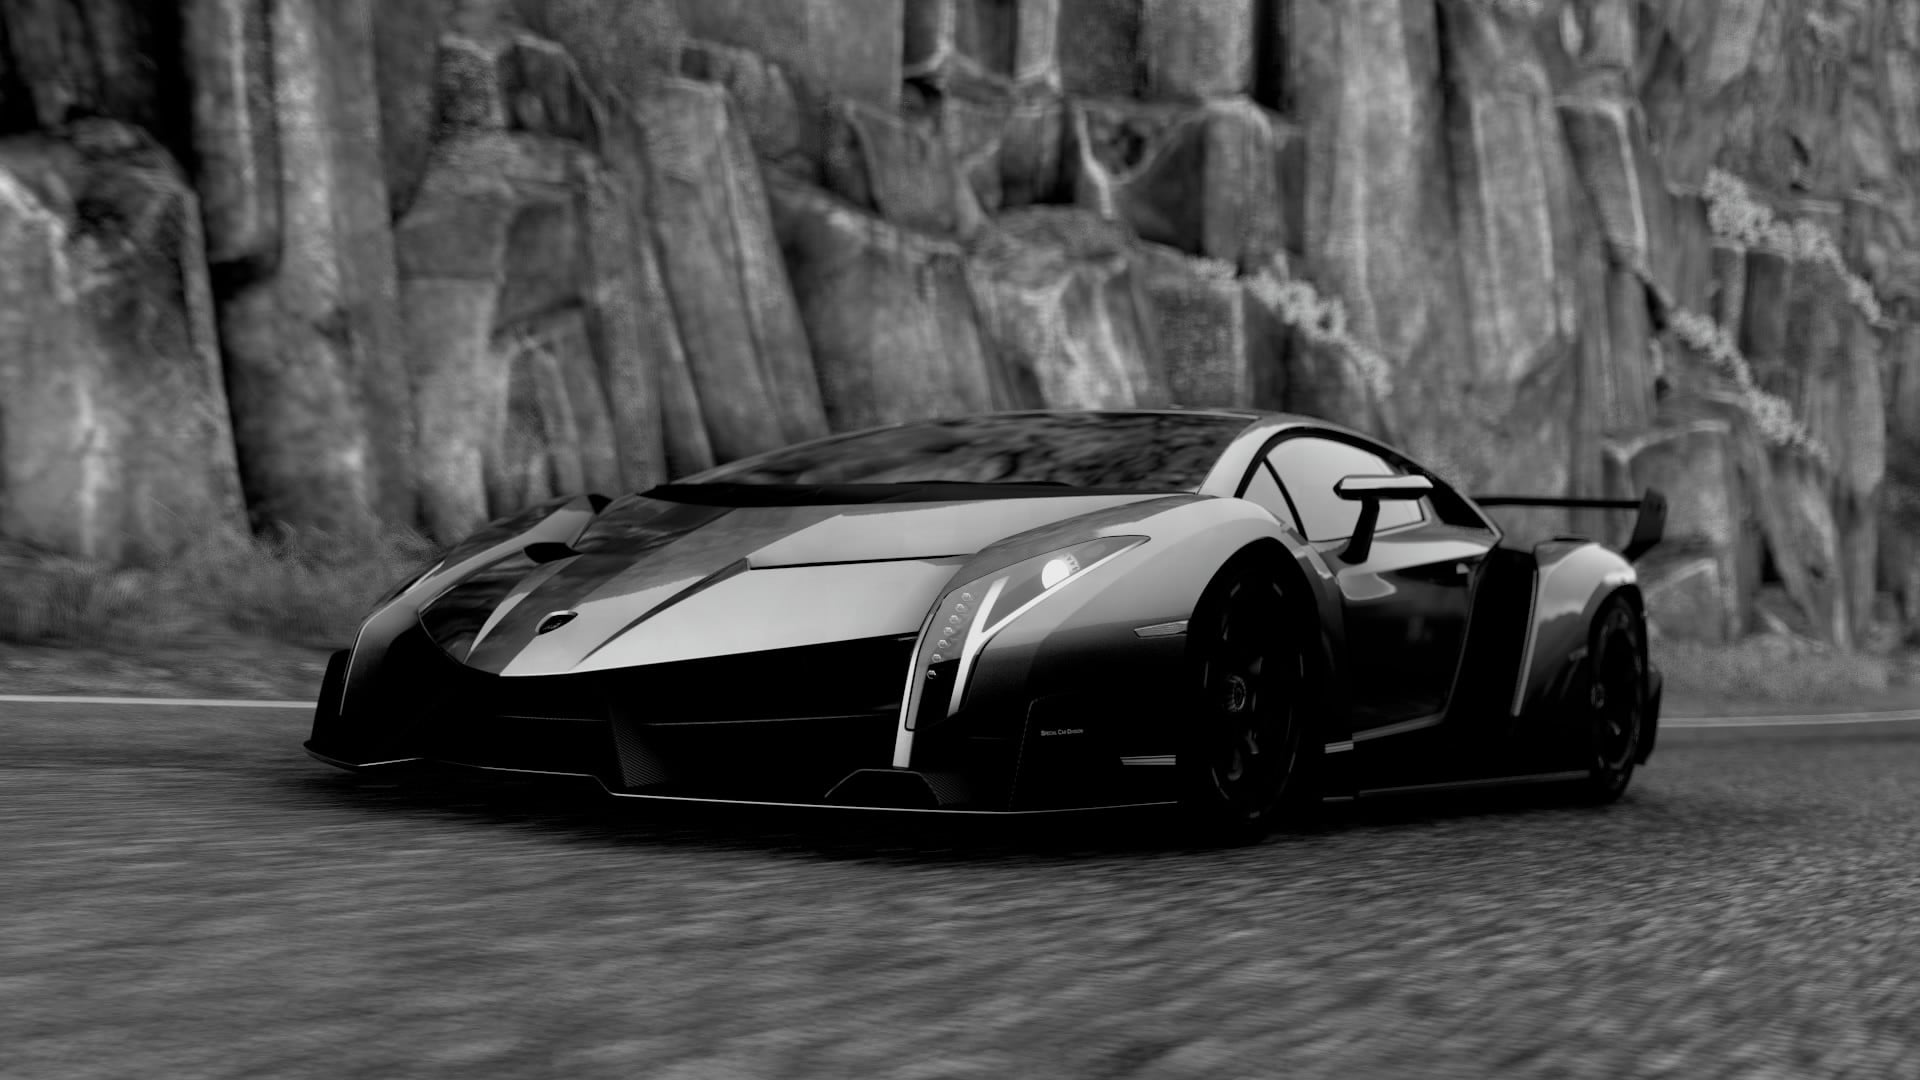 grayscale Lamborghini Veneno, Driveclub, car, mode of transportation